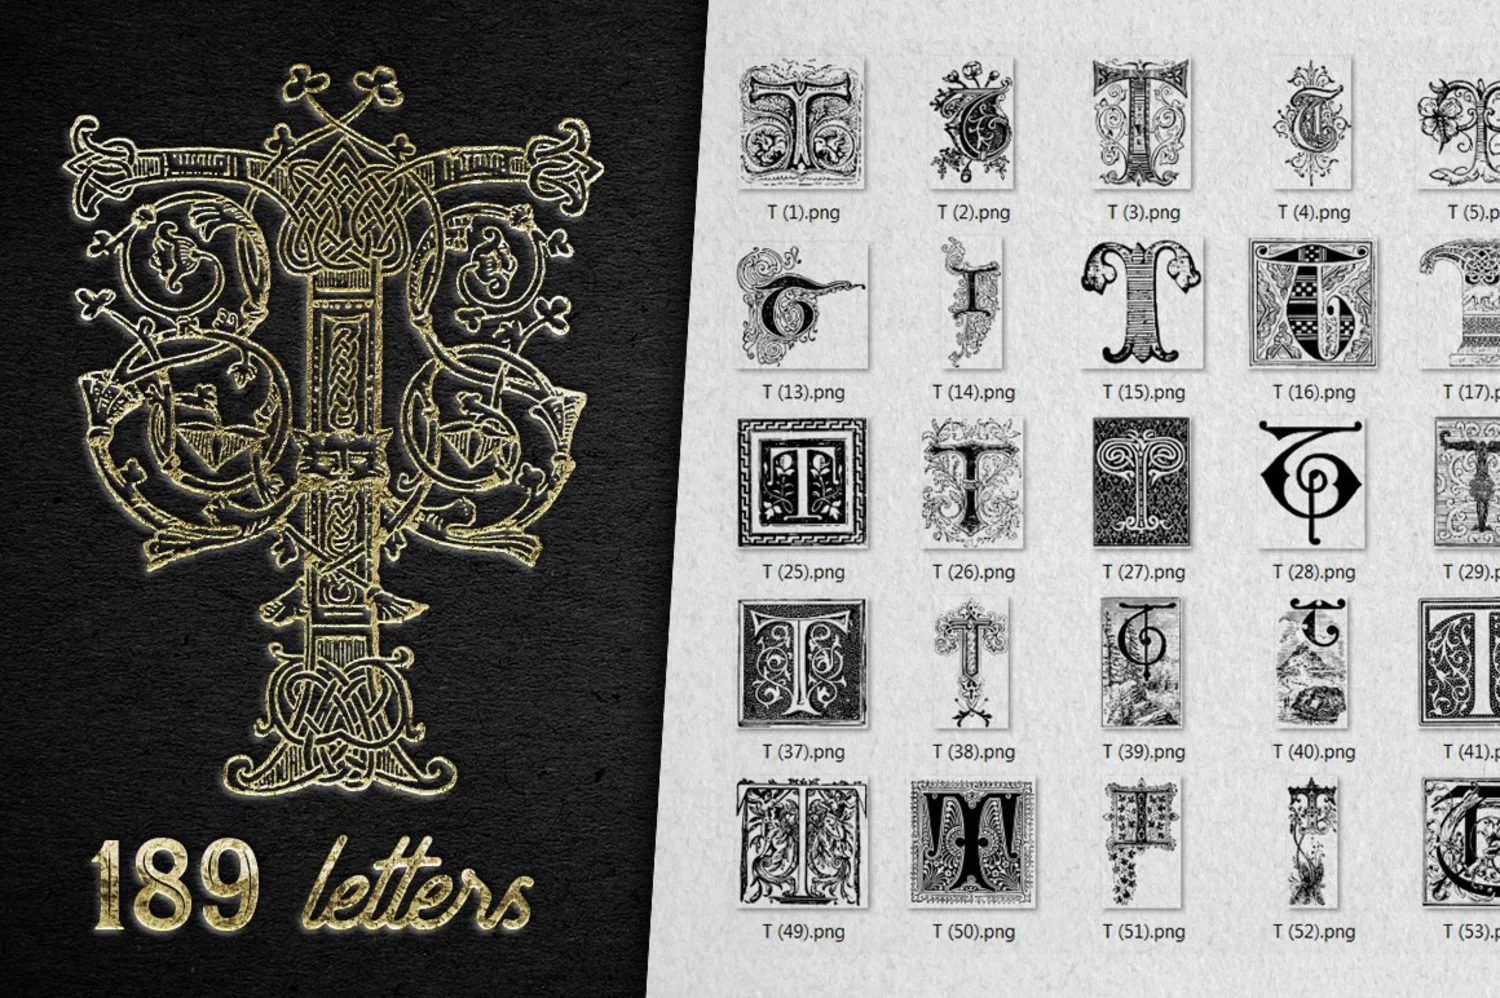 2222 2800+欧式复古装饰字母矢量图纹素材设计大包 VINTAGE LETTERS COLLECTION